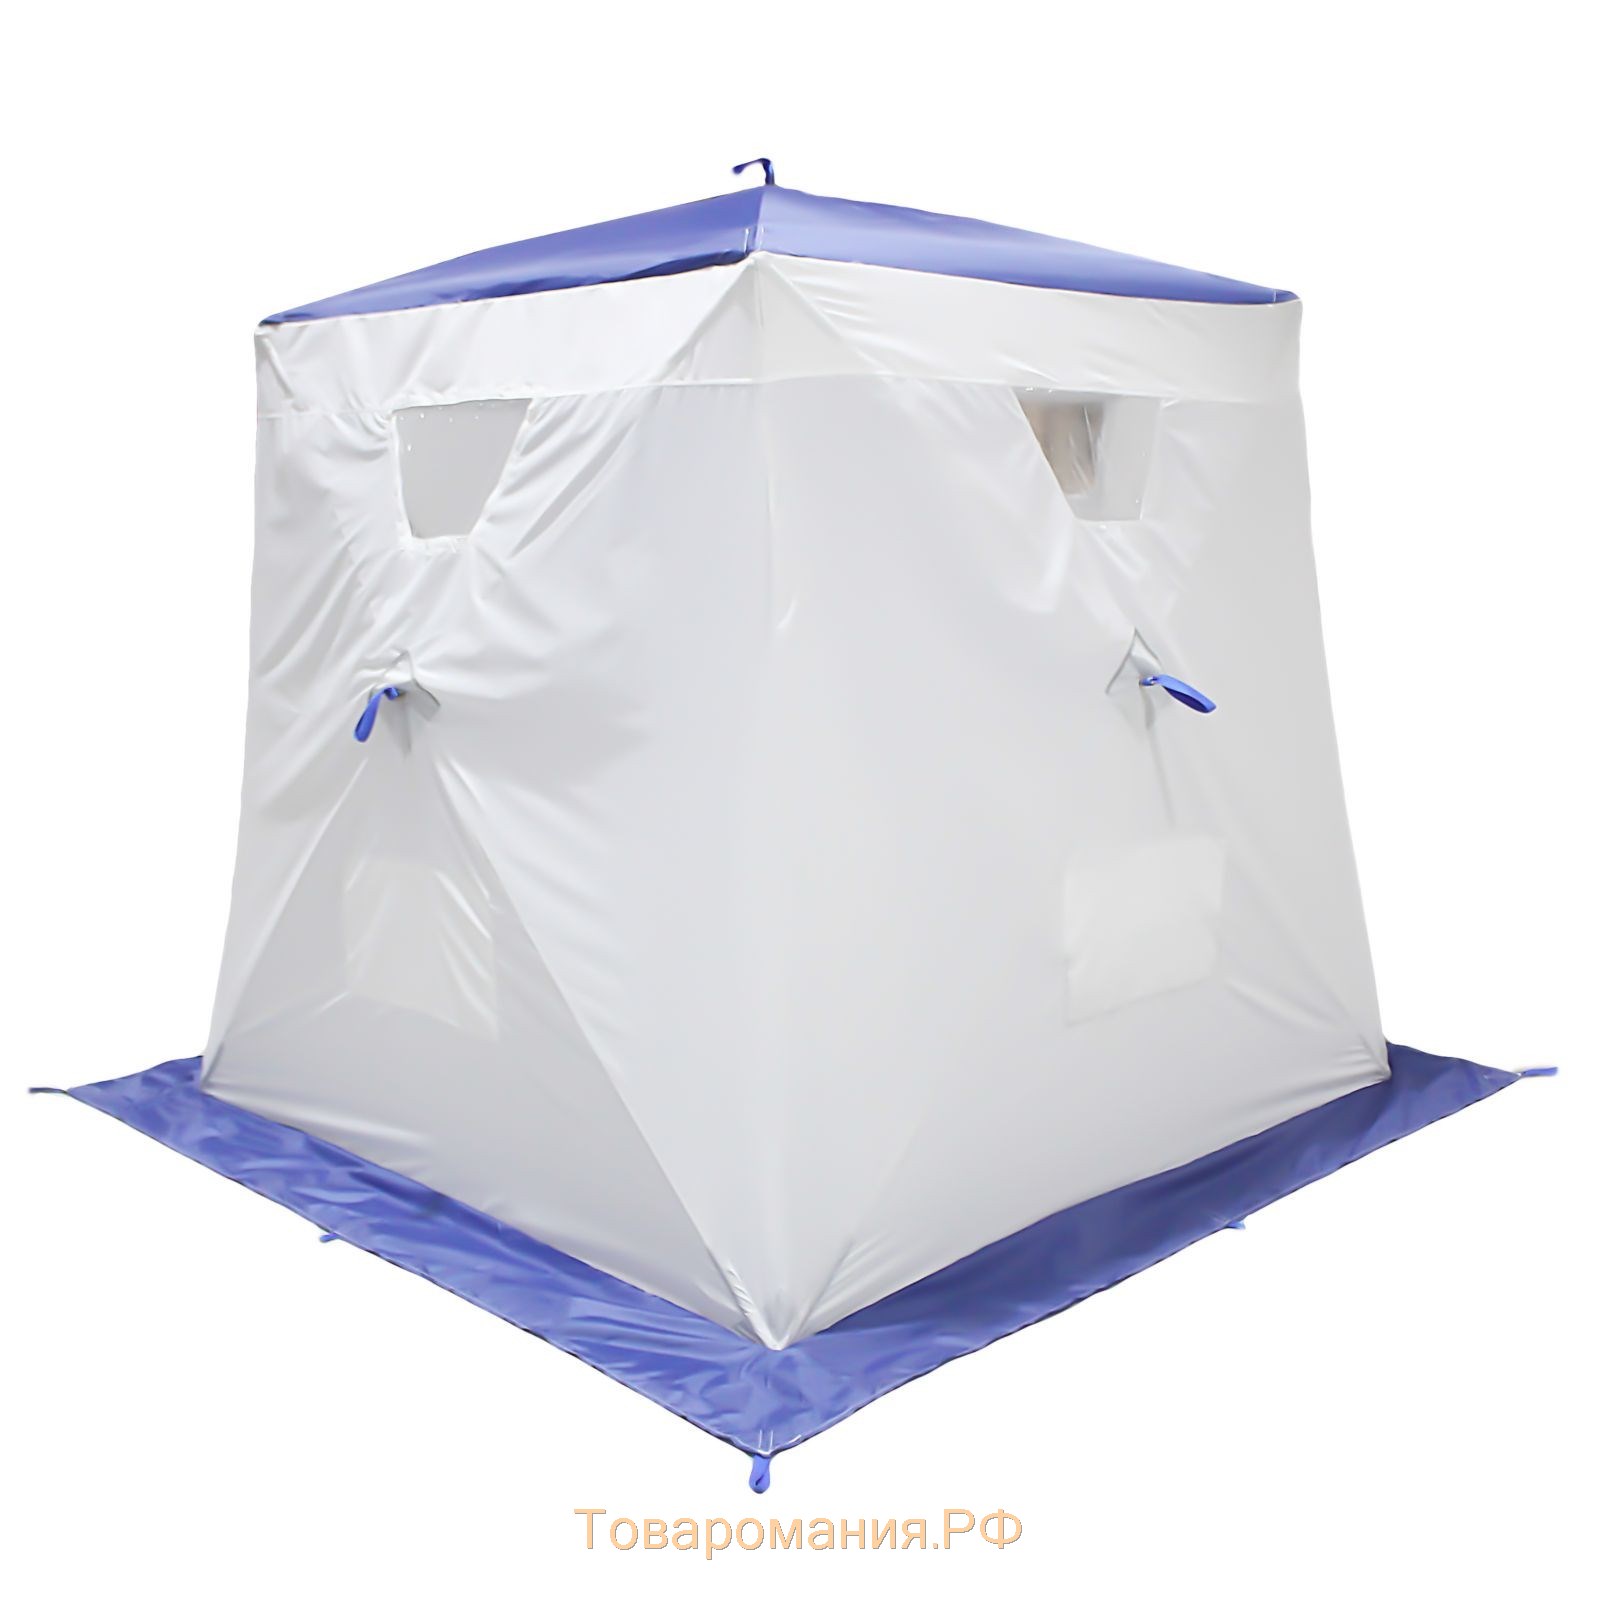 Палатка «Призма Люкс» 170, 1-слойная, цвет белый/синий